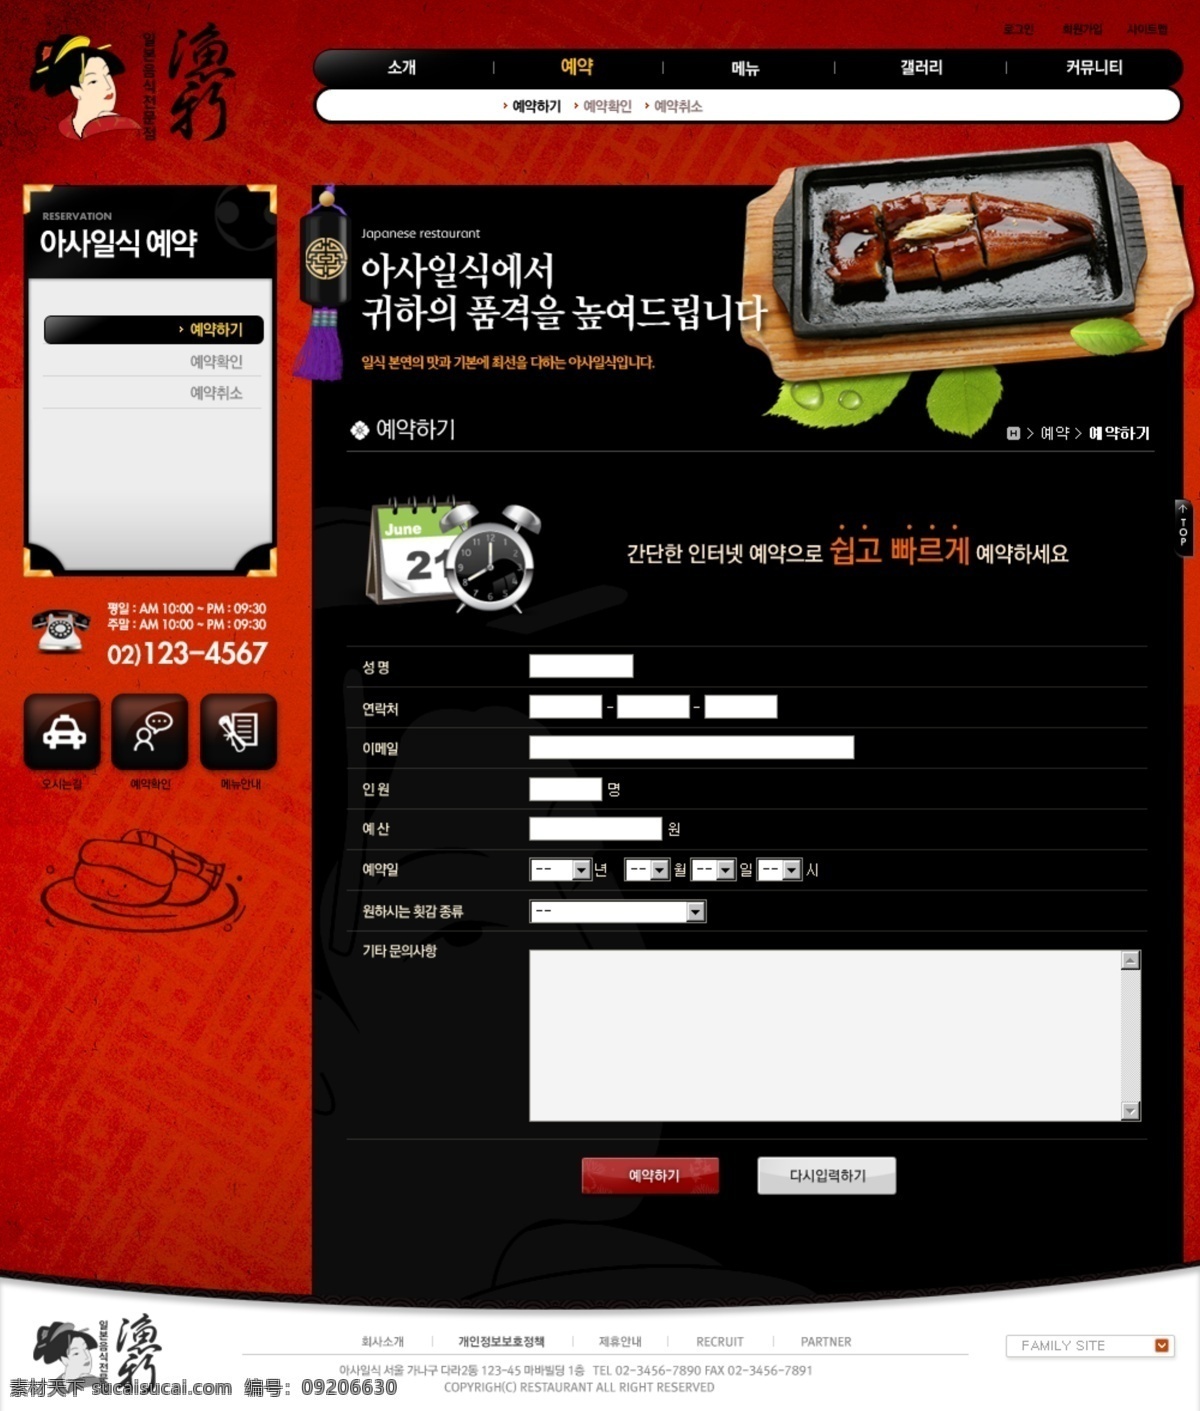 分层 ui设计 版式设计 菜品 餐厅 饭店 古典 韩国模板 日式 料理 网页设计 源文件 网页模板 网页界面 界面设计 网页版式 红色 日本 食物 美食 卷轴 黑色 韩文模板 web 网页素材 其他网页素材